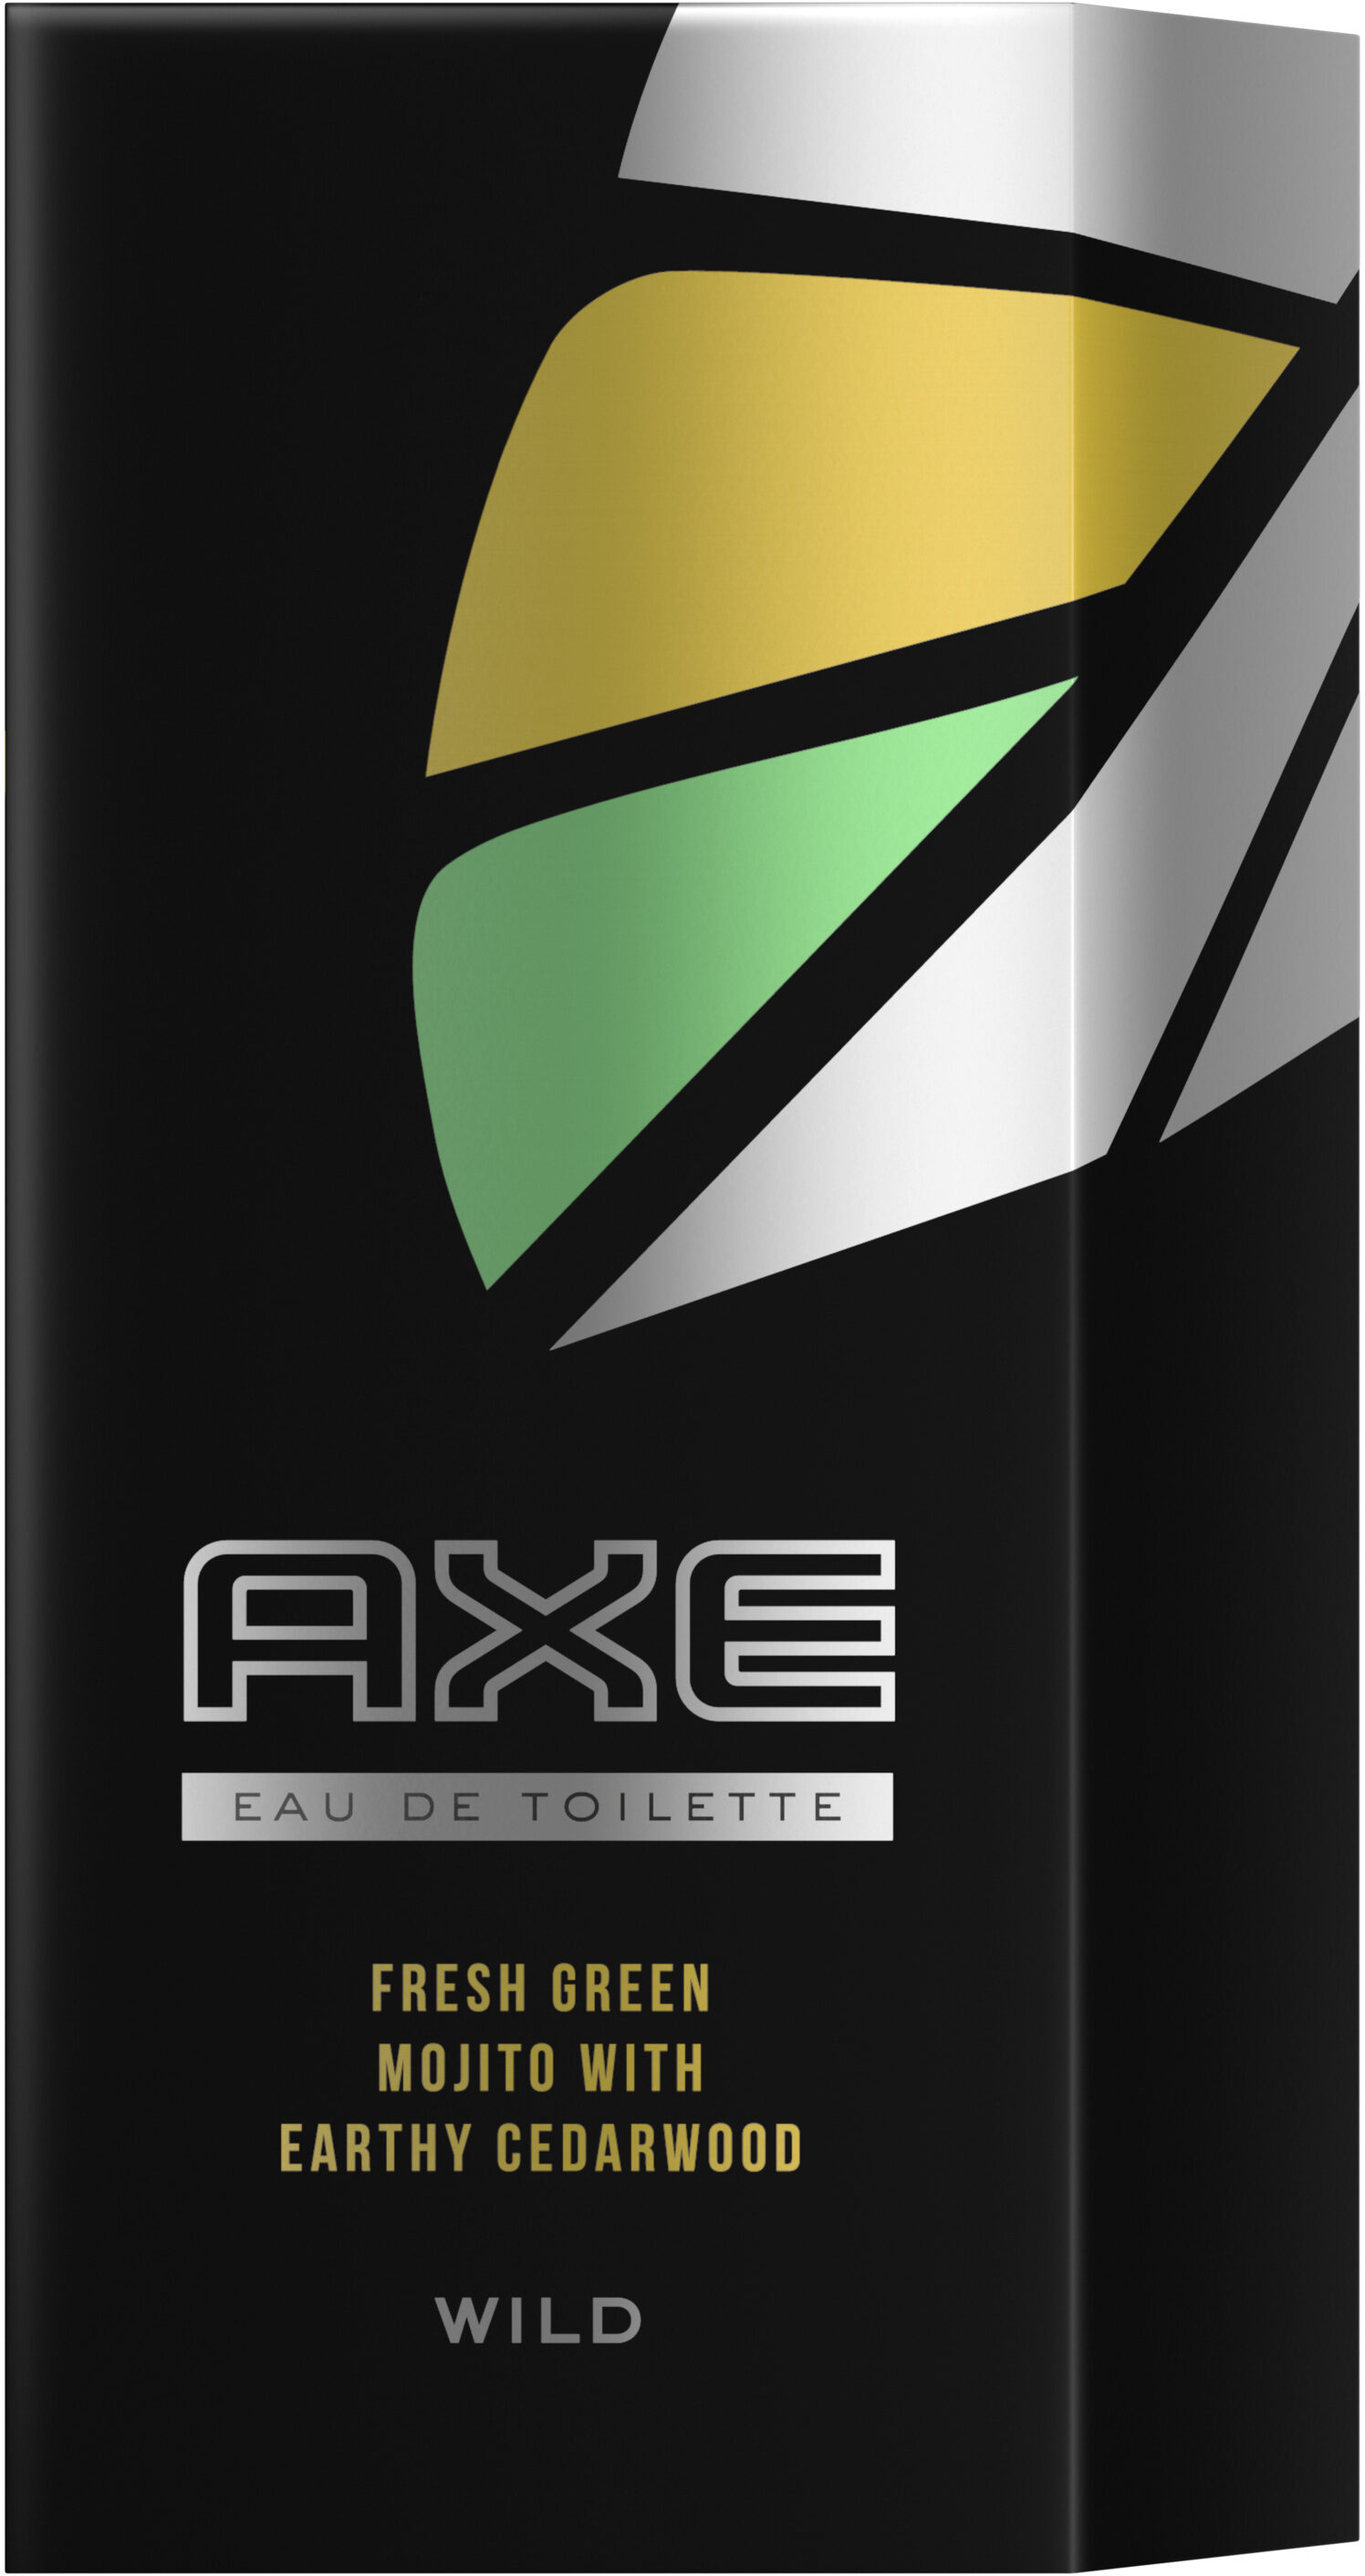 AXE Eau De Toilette Wild 100ml - Produto - fr